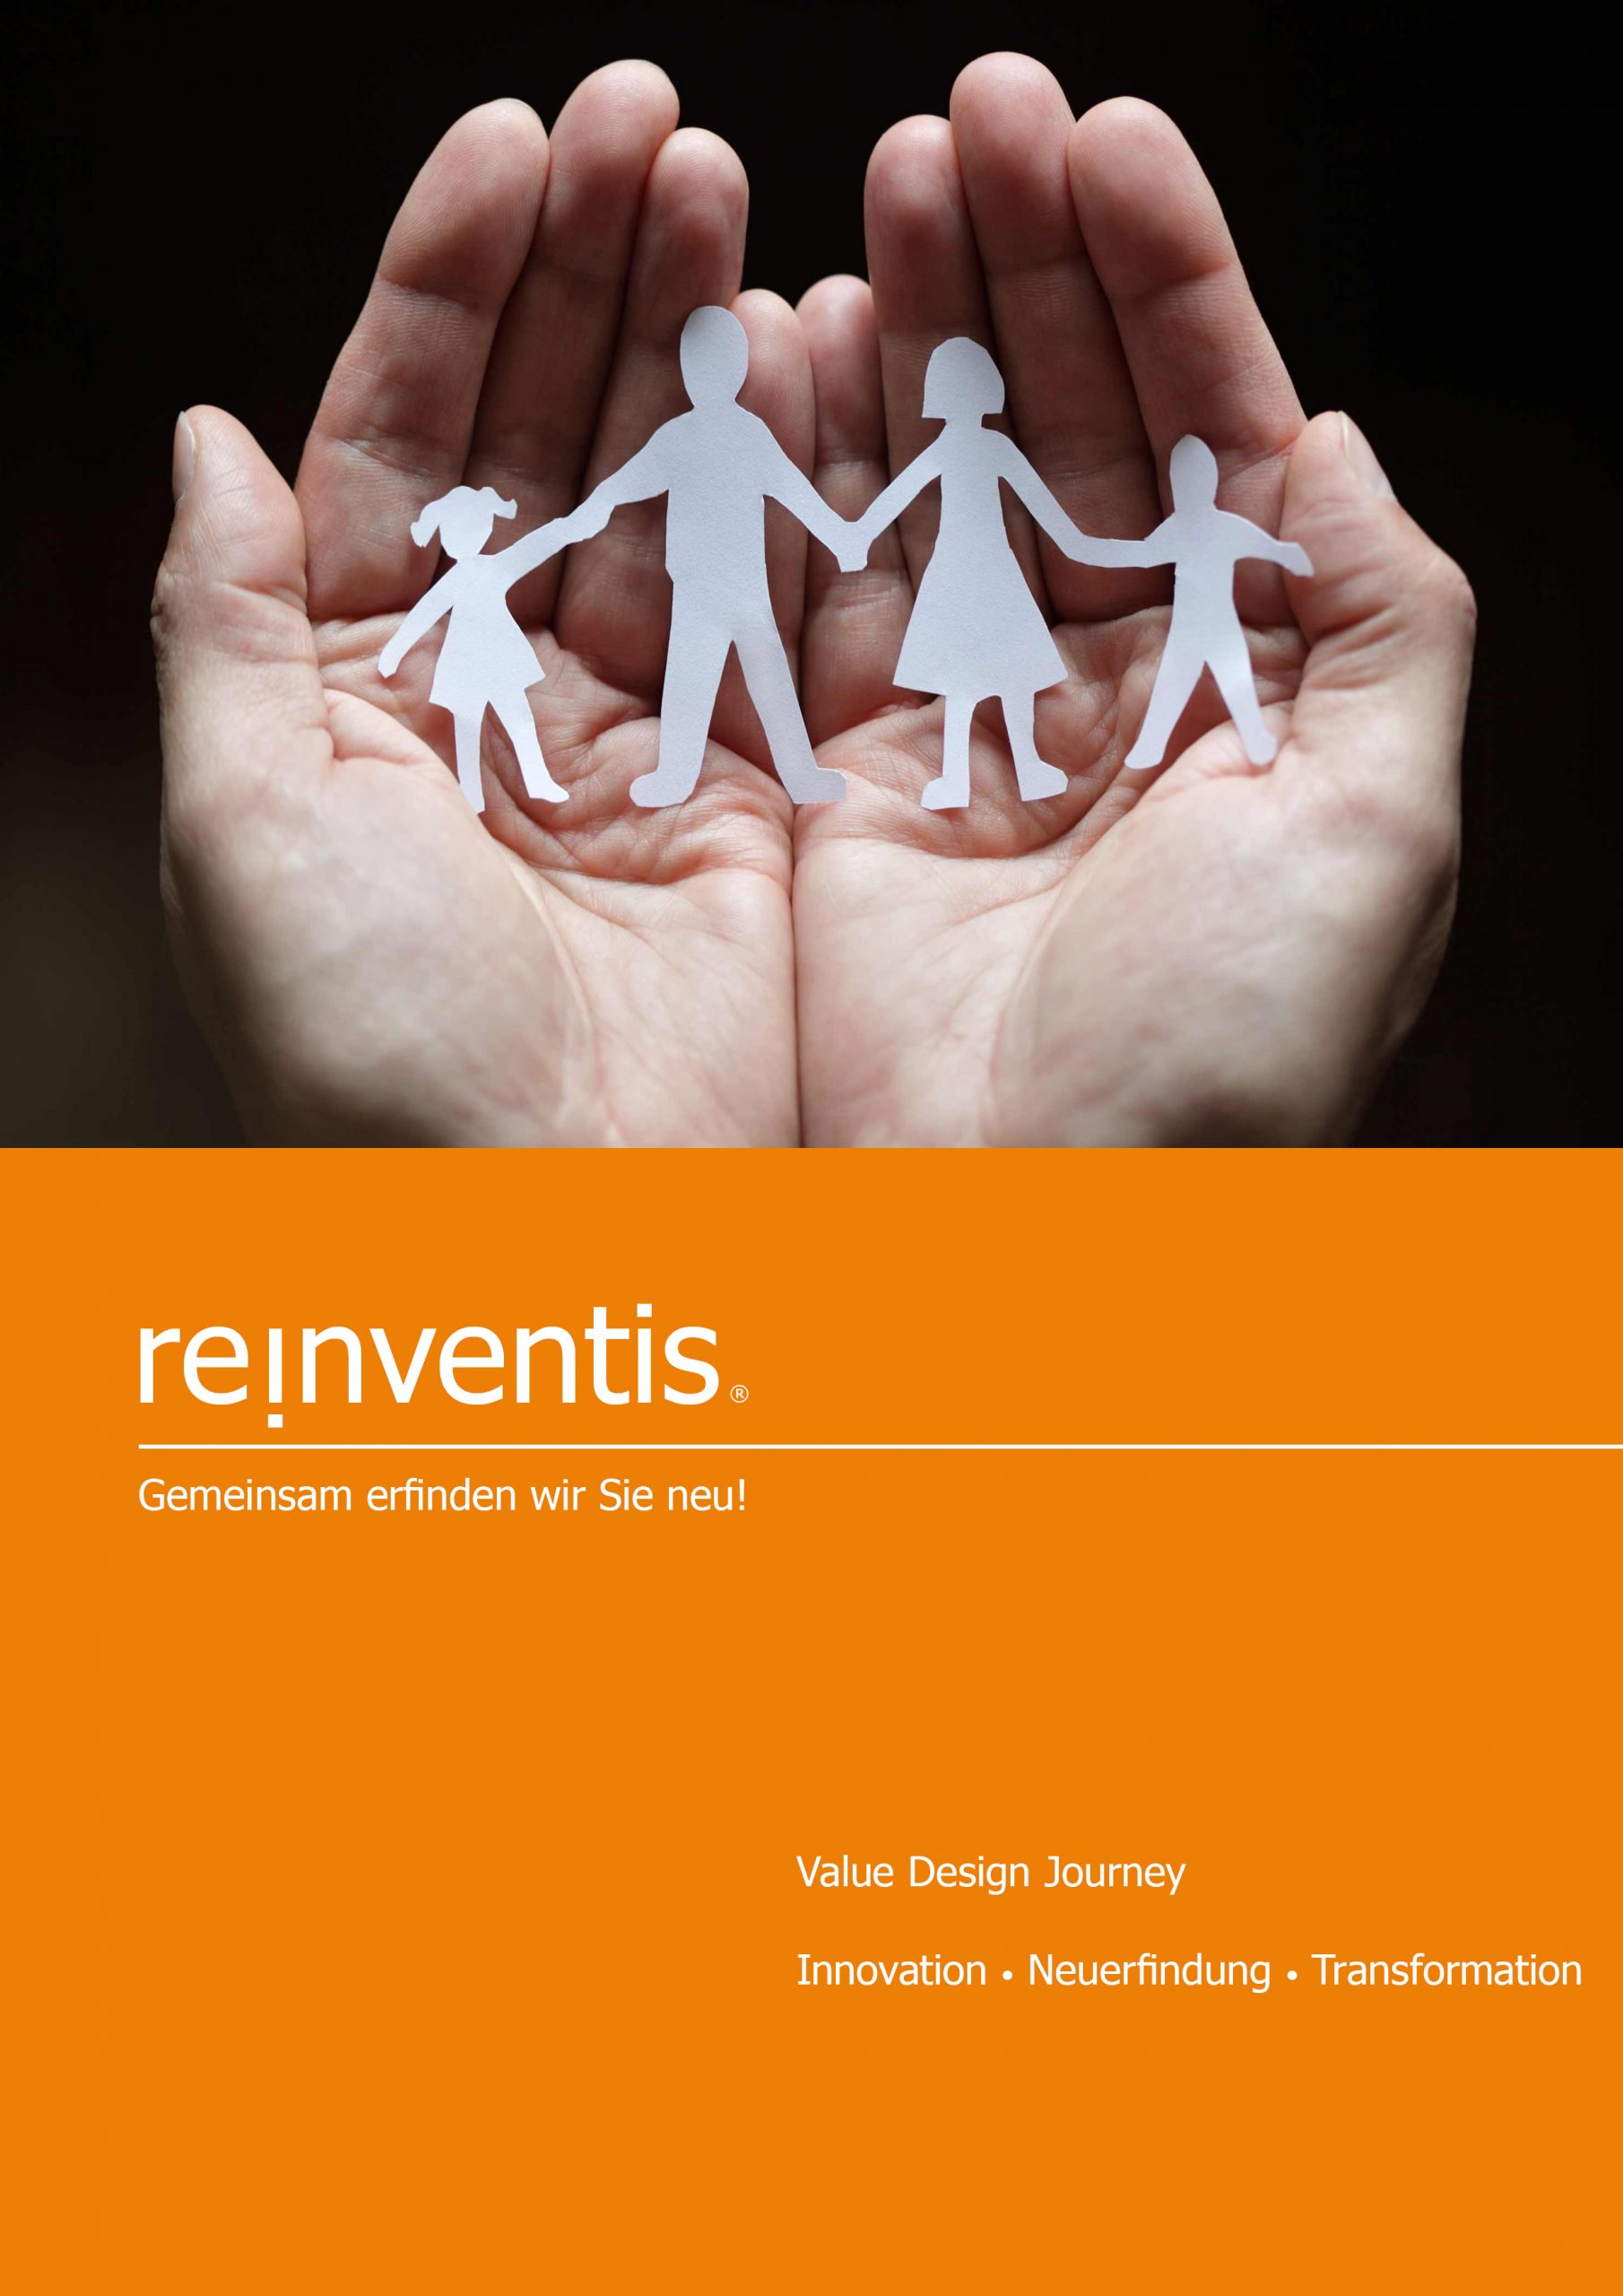 Value Design Journey - Strategieberatung - Innovation, Reinvention und Transformation - REINVENTIS - München